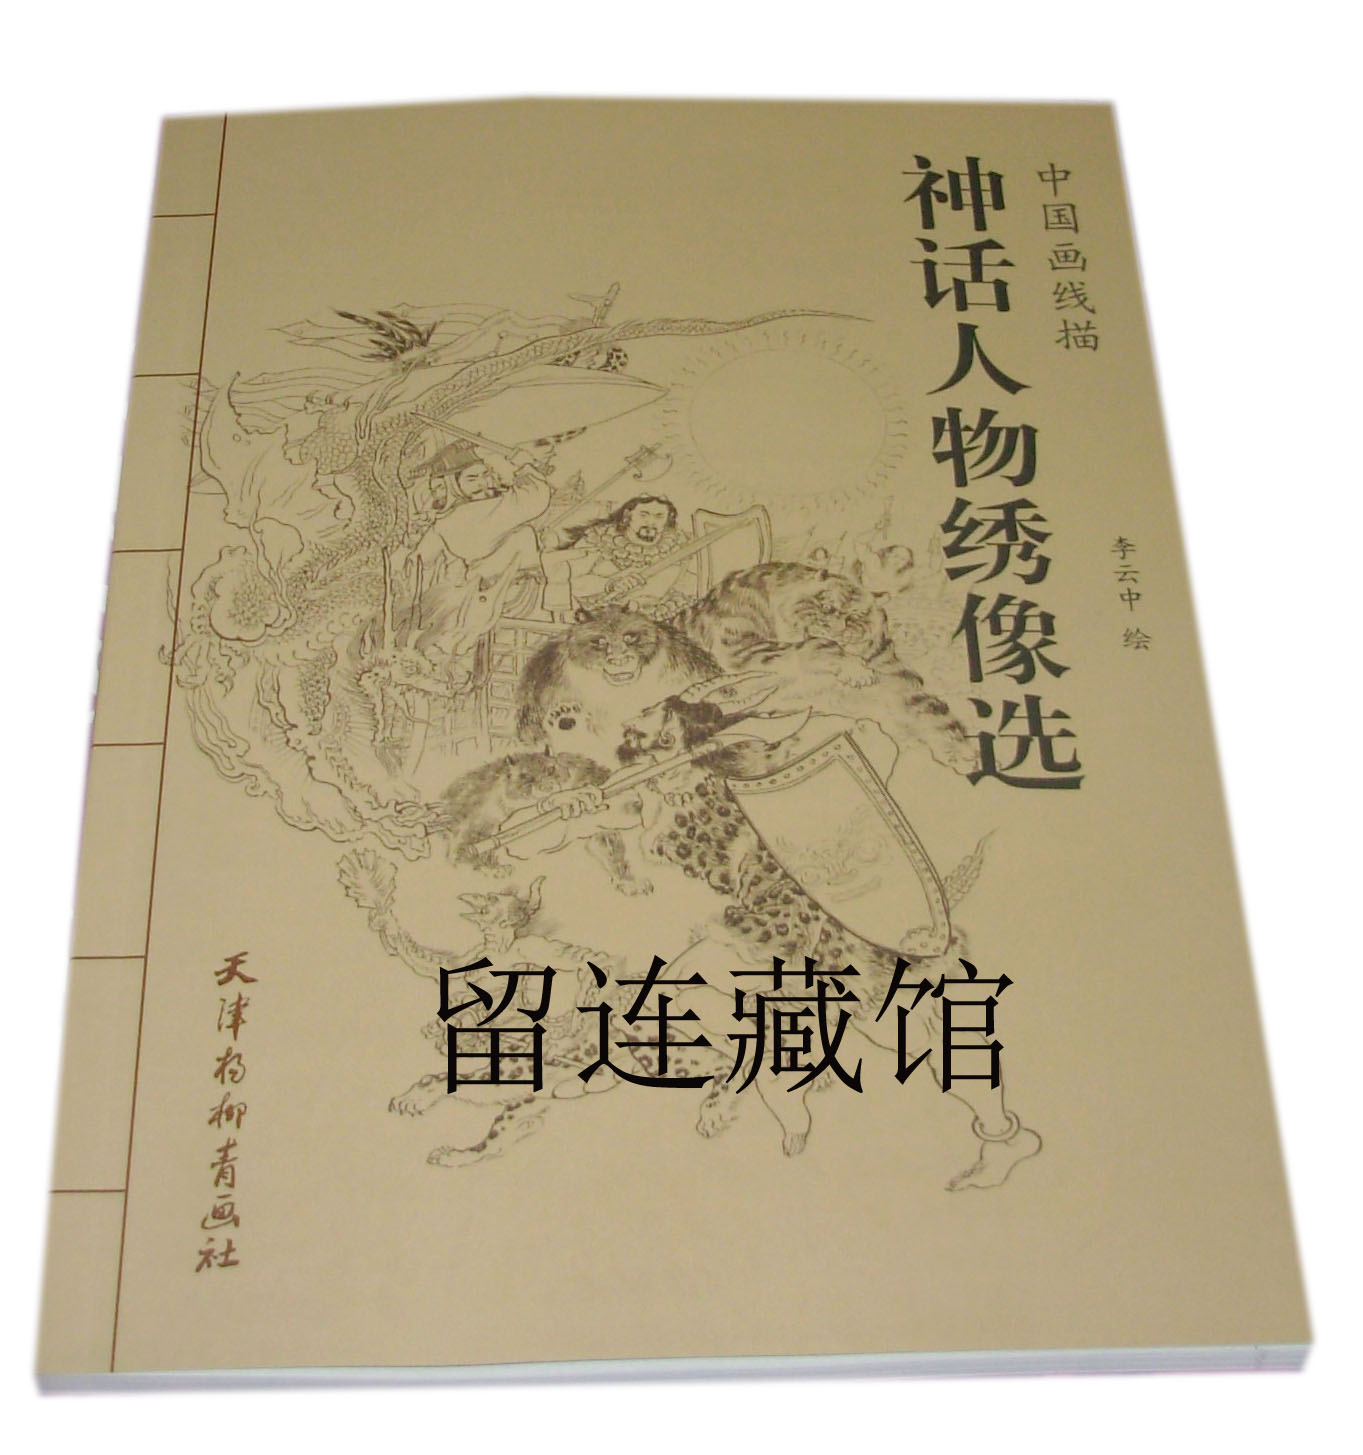 中国画线描 神话人物绣像选 连环画 小人书 杨柳青画社 8折售